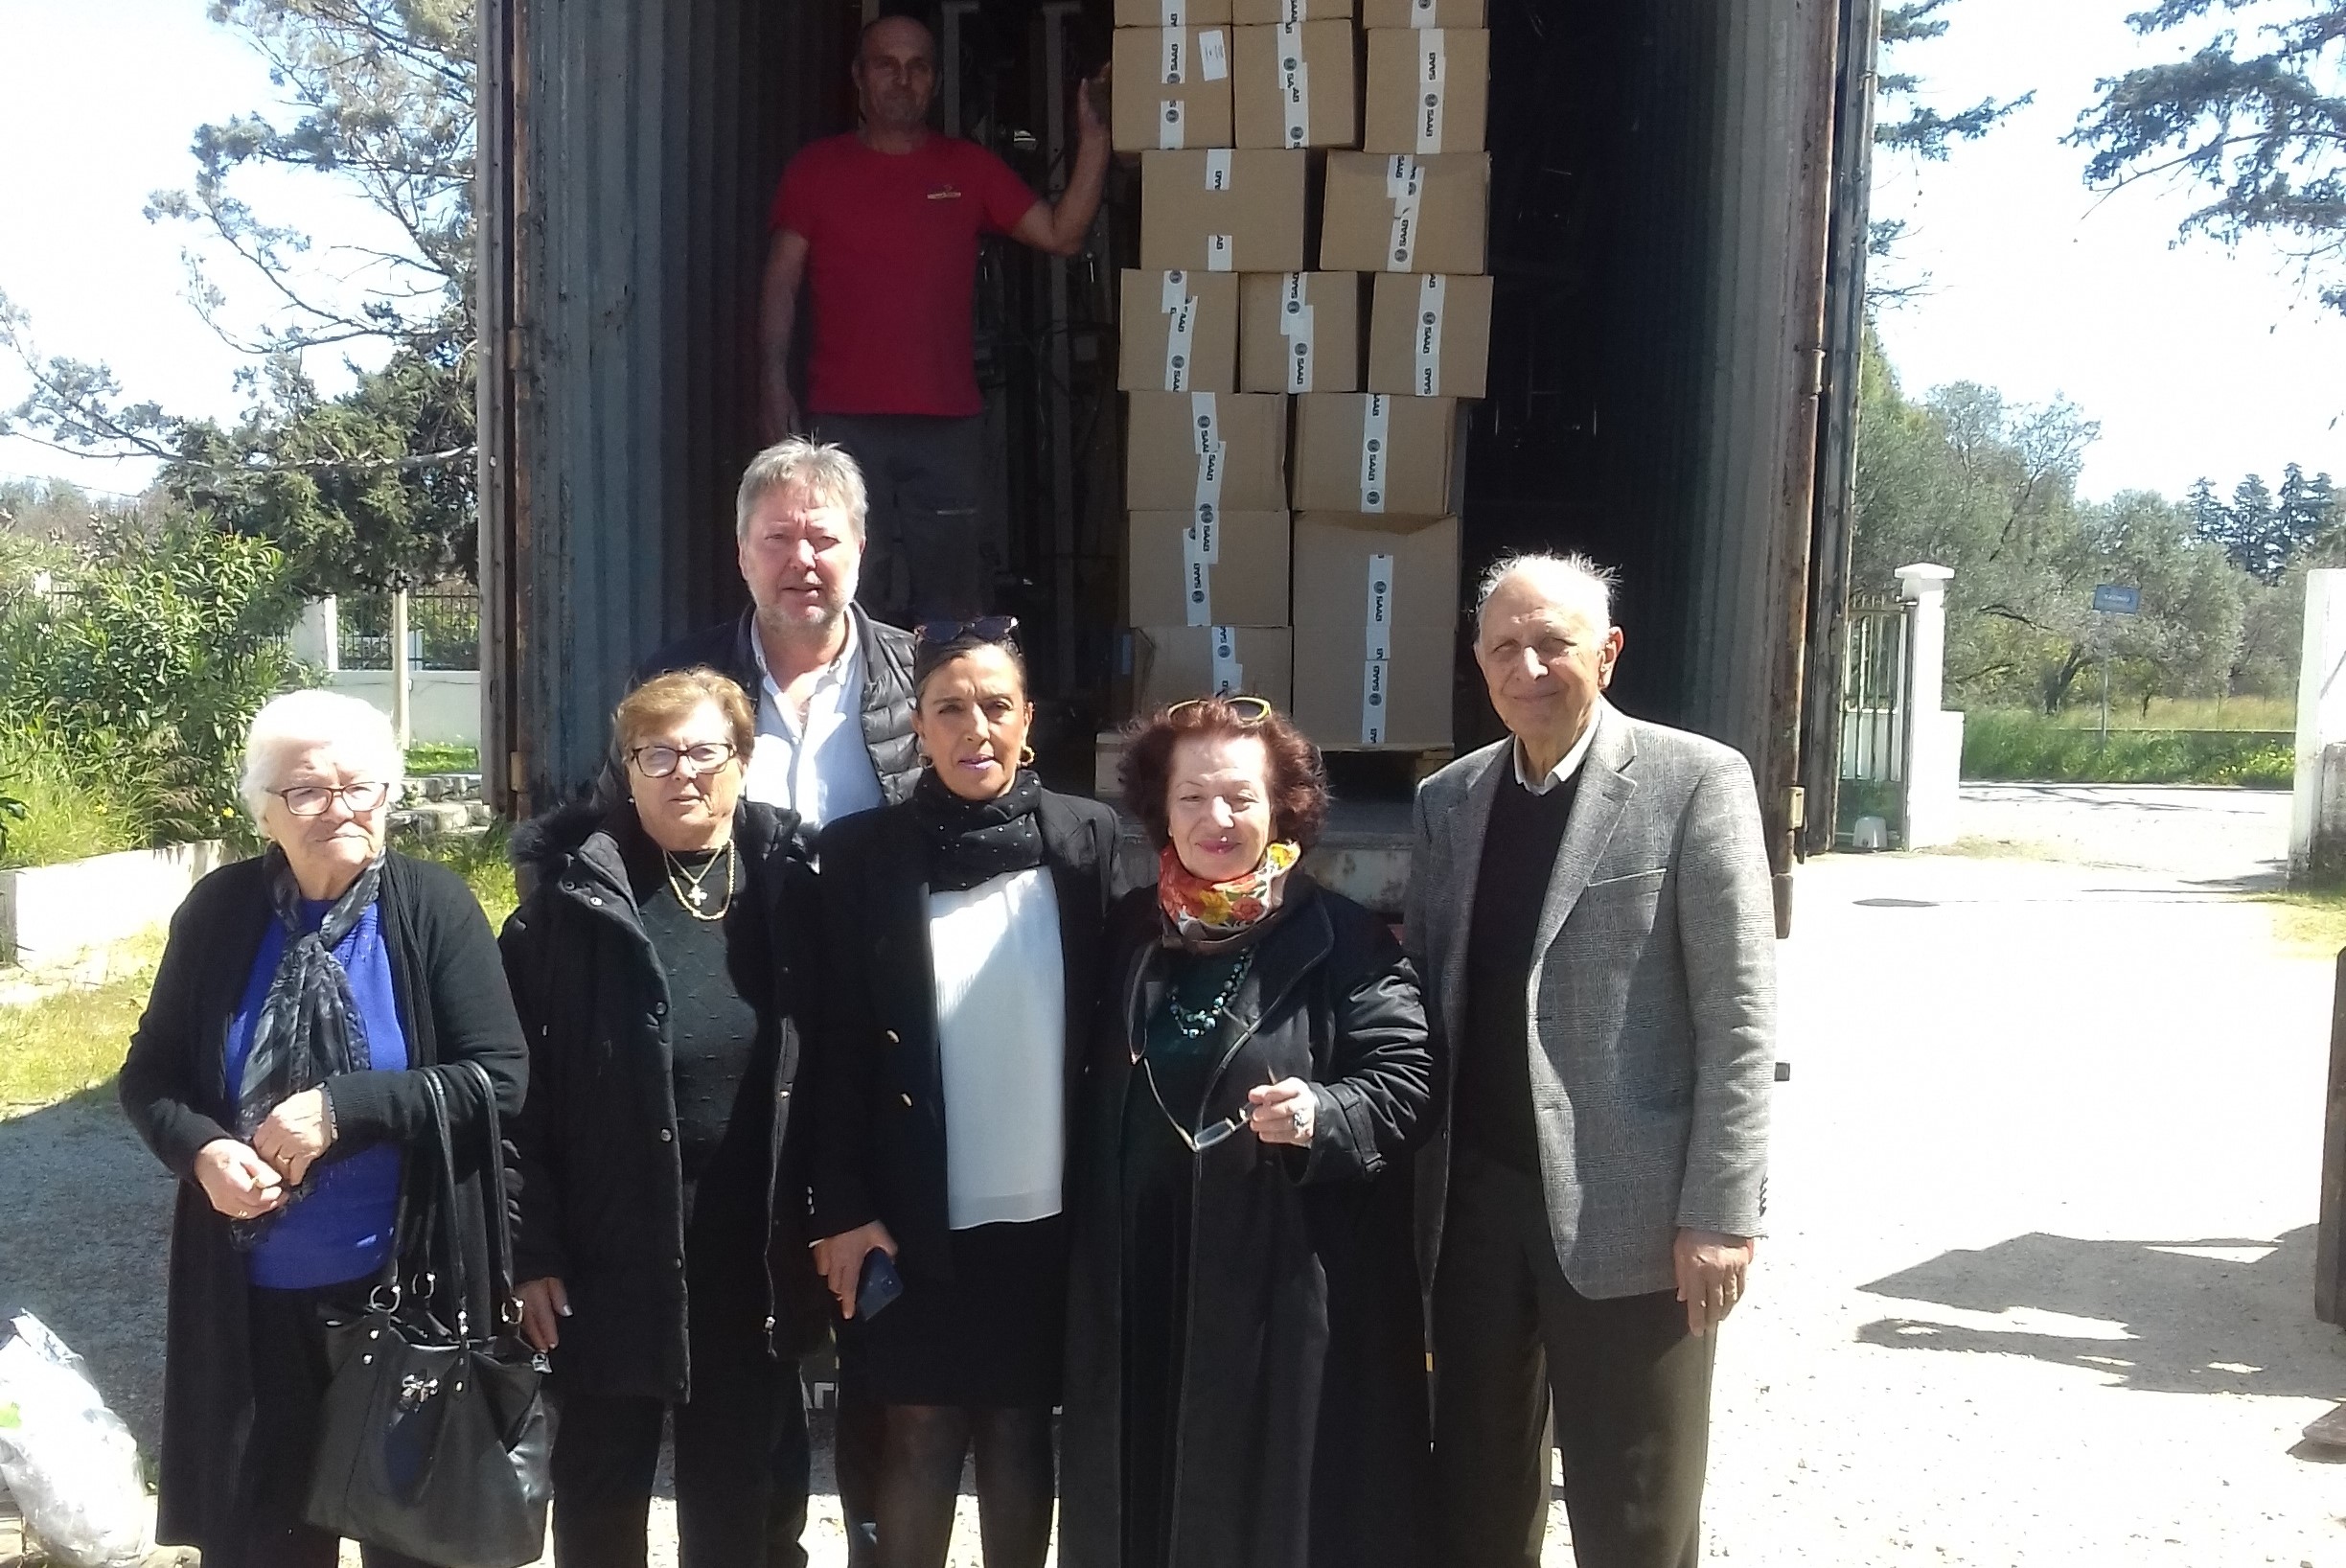 Κέντρο Κοινωνικής Πρόνοιας της Περιφέρειας Ν.Αιγαίου: Ευχαριστούμε τον Σύλλογο Παραδεισίου Αγία Μαρίνα για τις άπειρες προσφορές ιατροτεχνολογικού υλικού